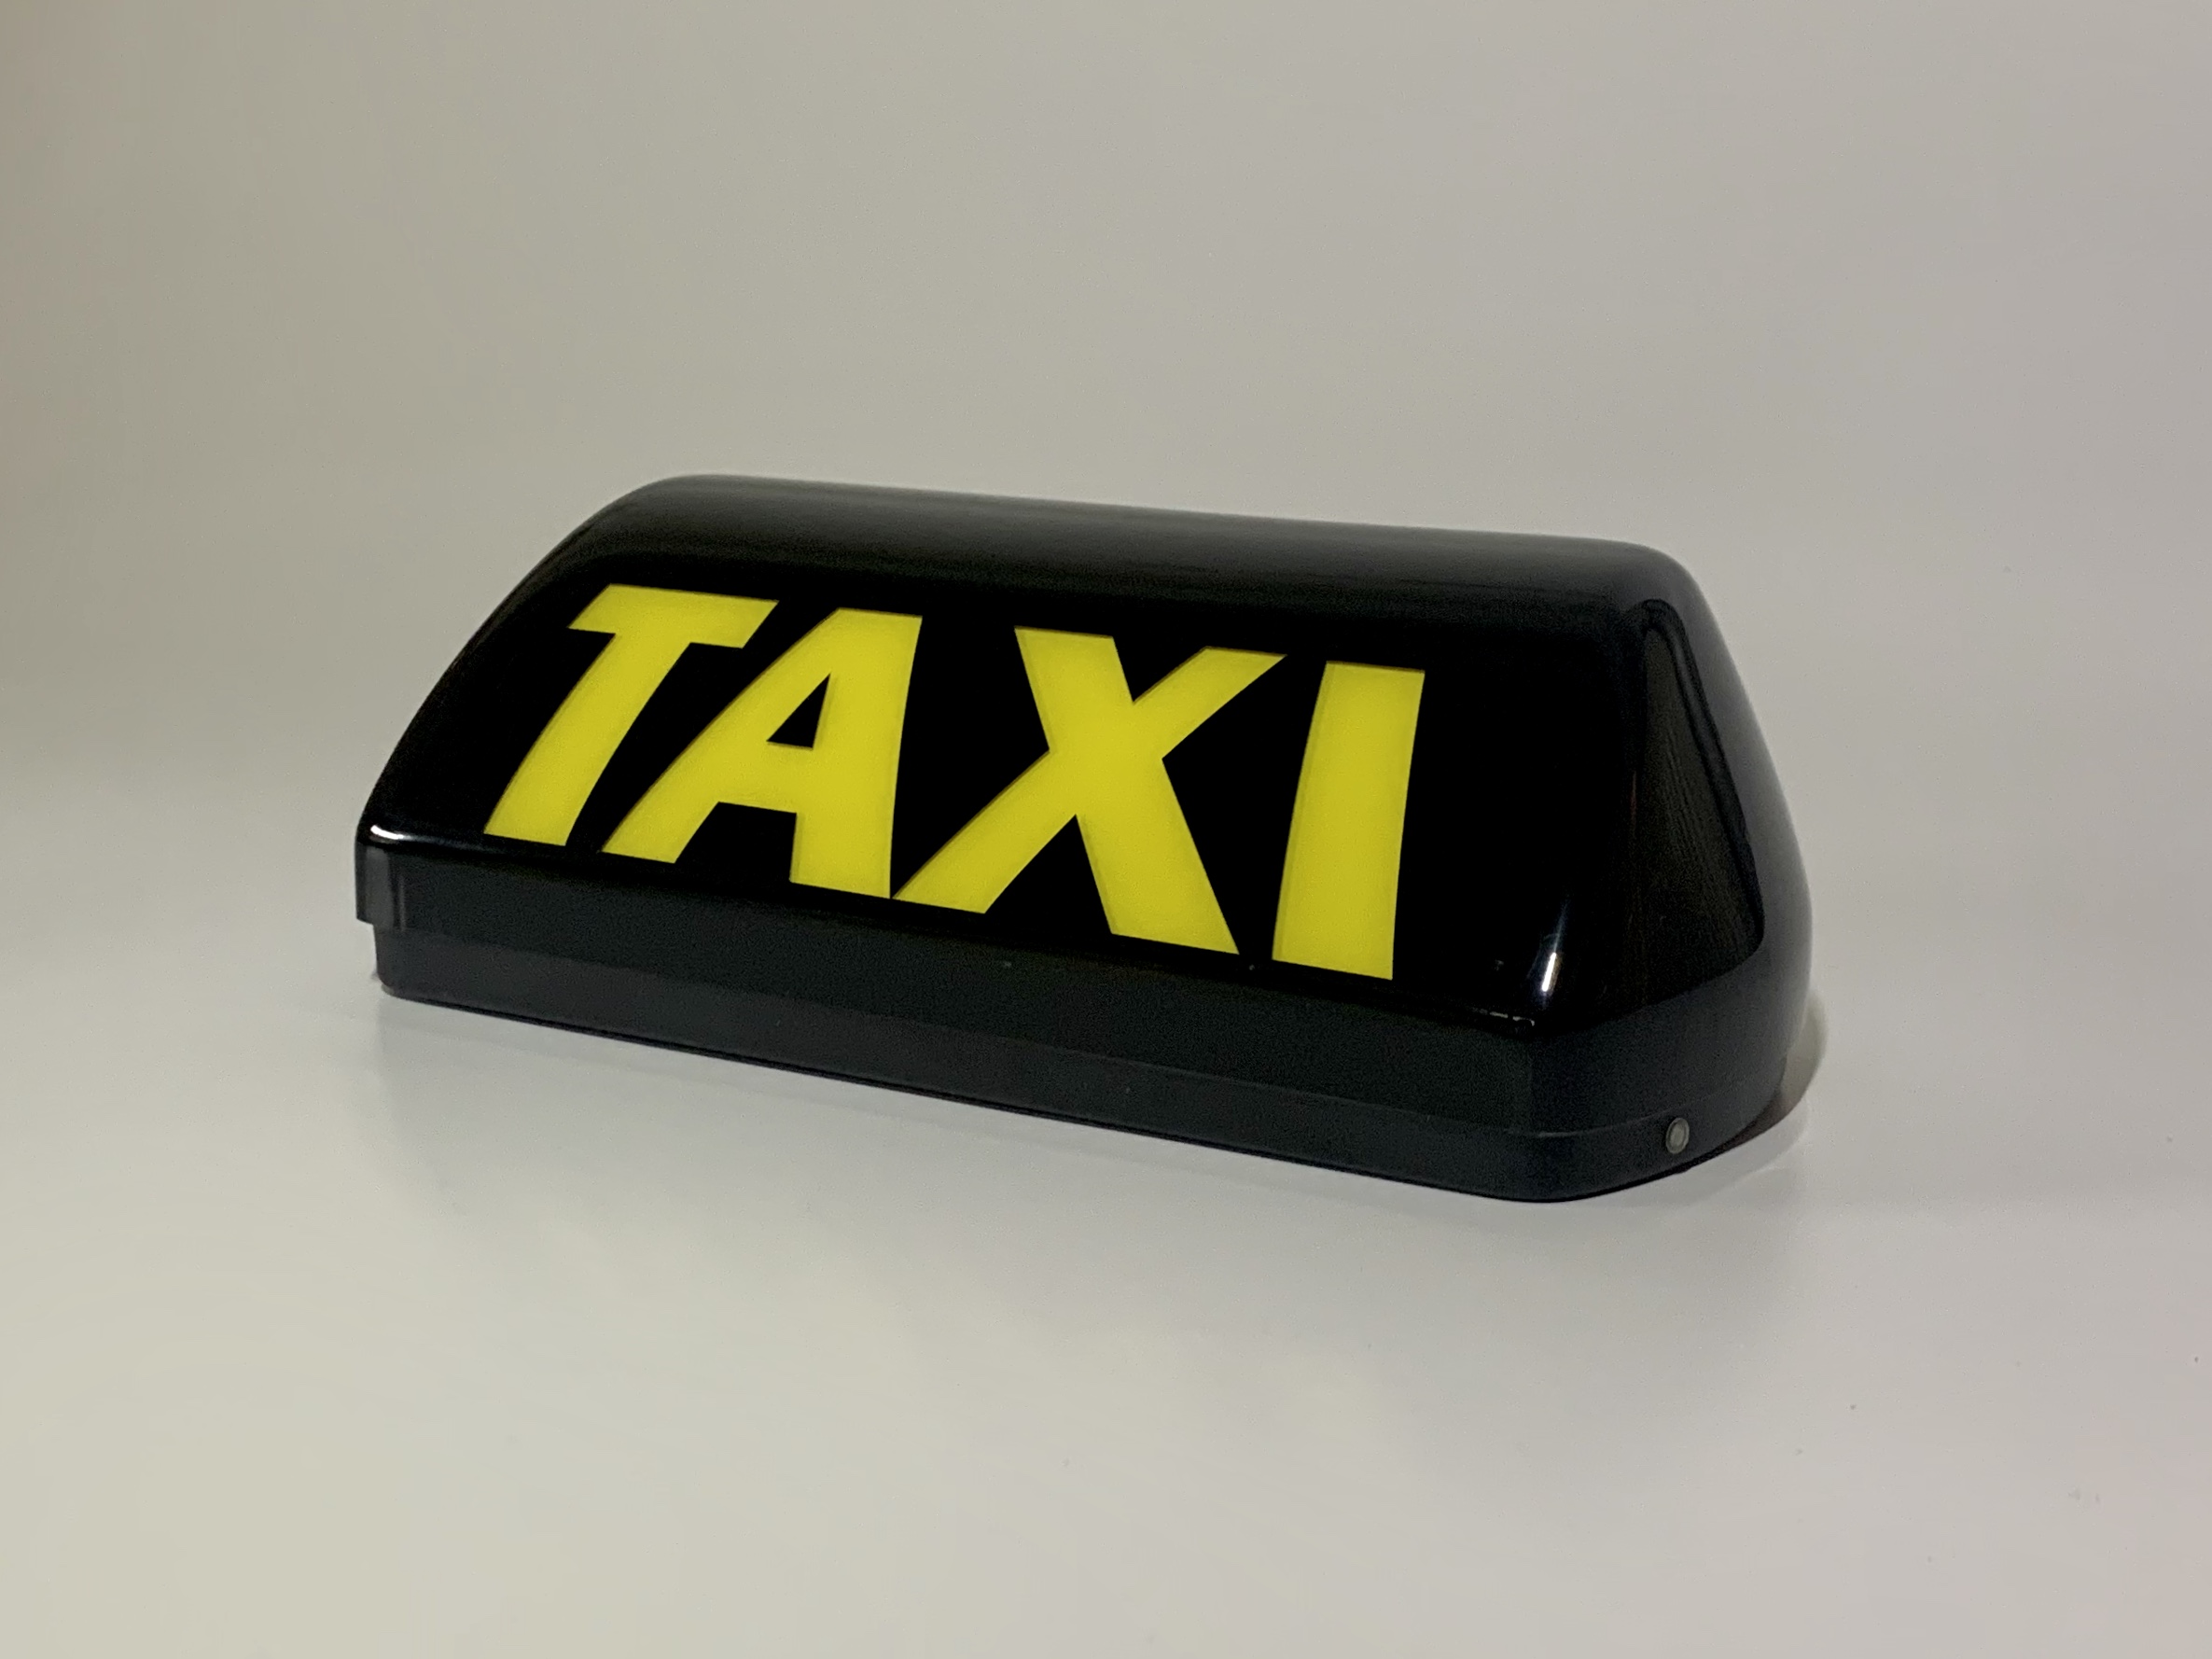 TAXI-Dachleuchten - Taxi-Dachlichter und -schilder